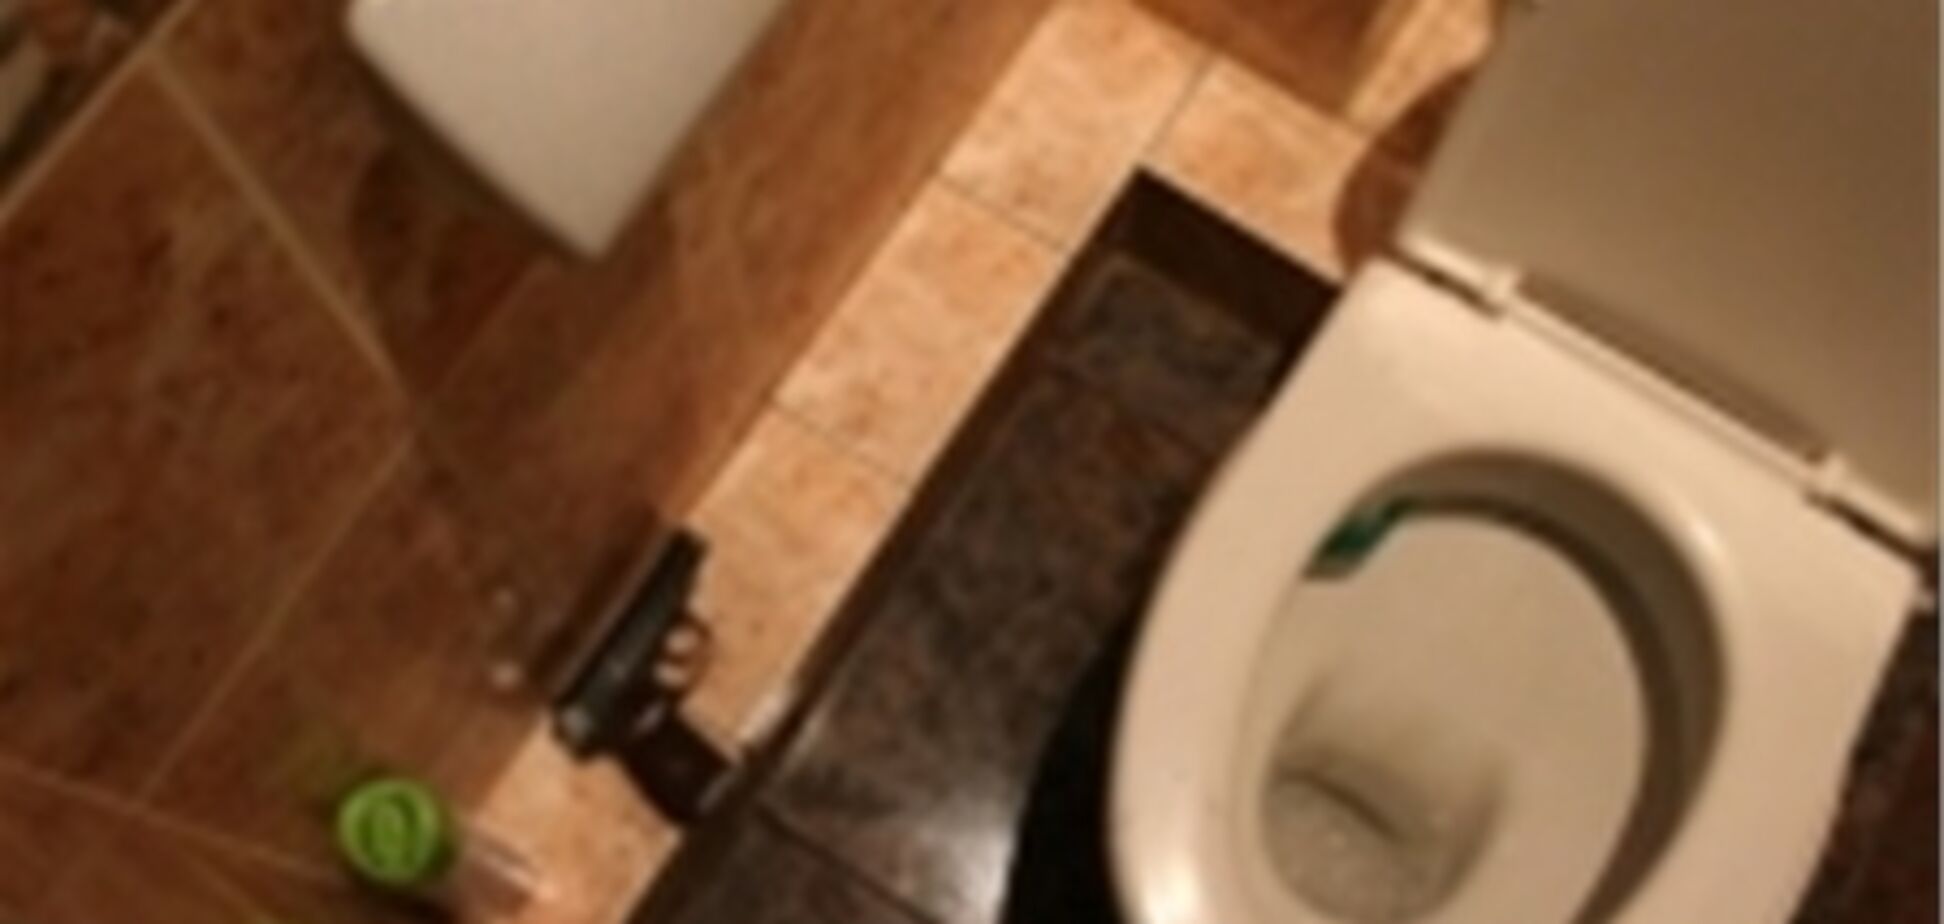 Віце-мер Луцька забув пістолет в туалеті луцької мерії